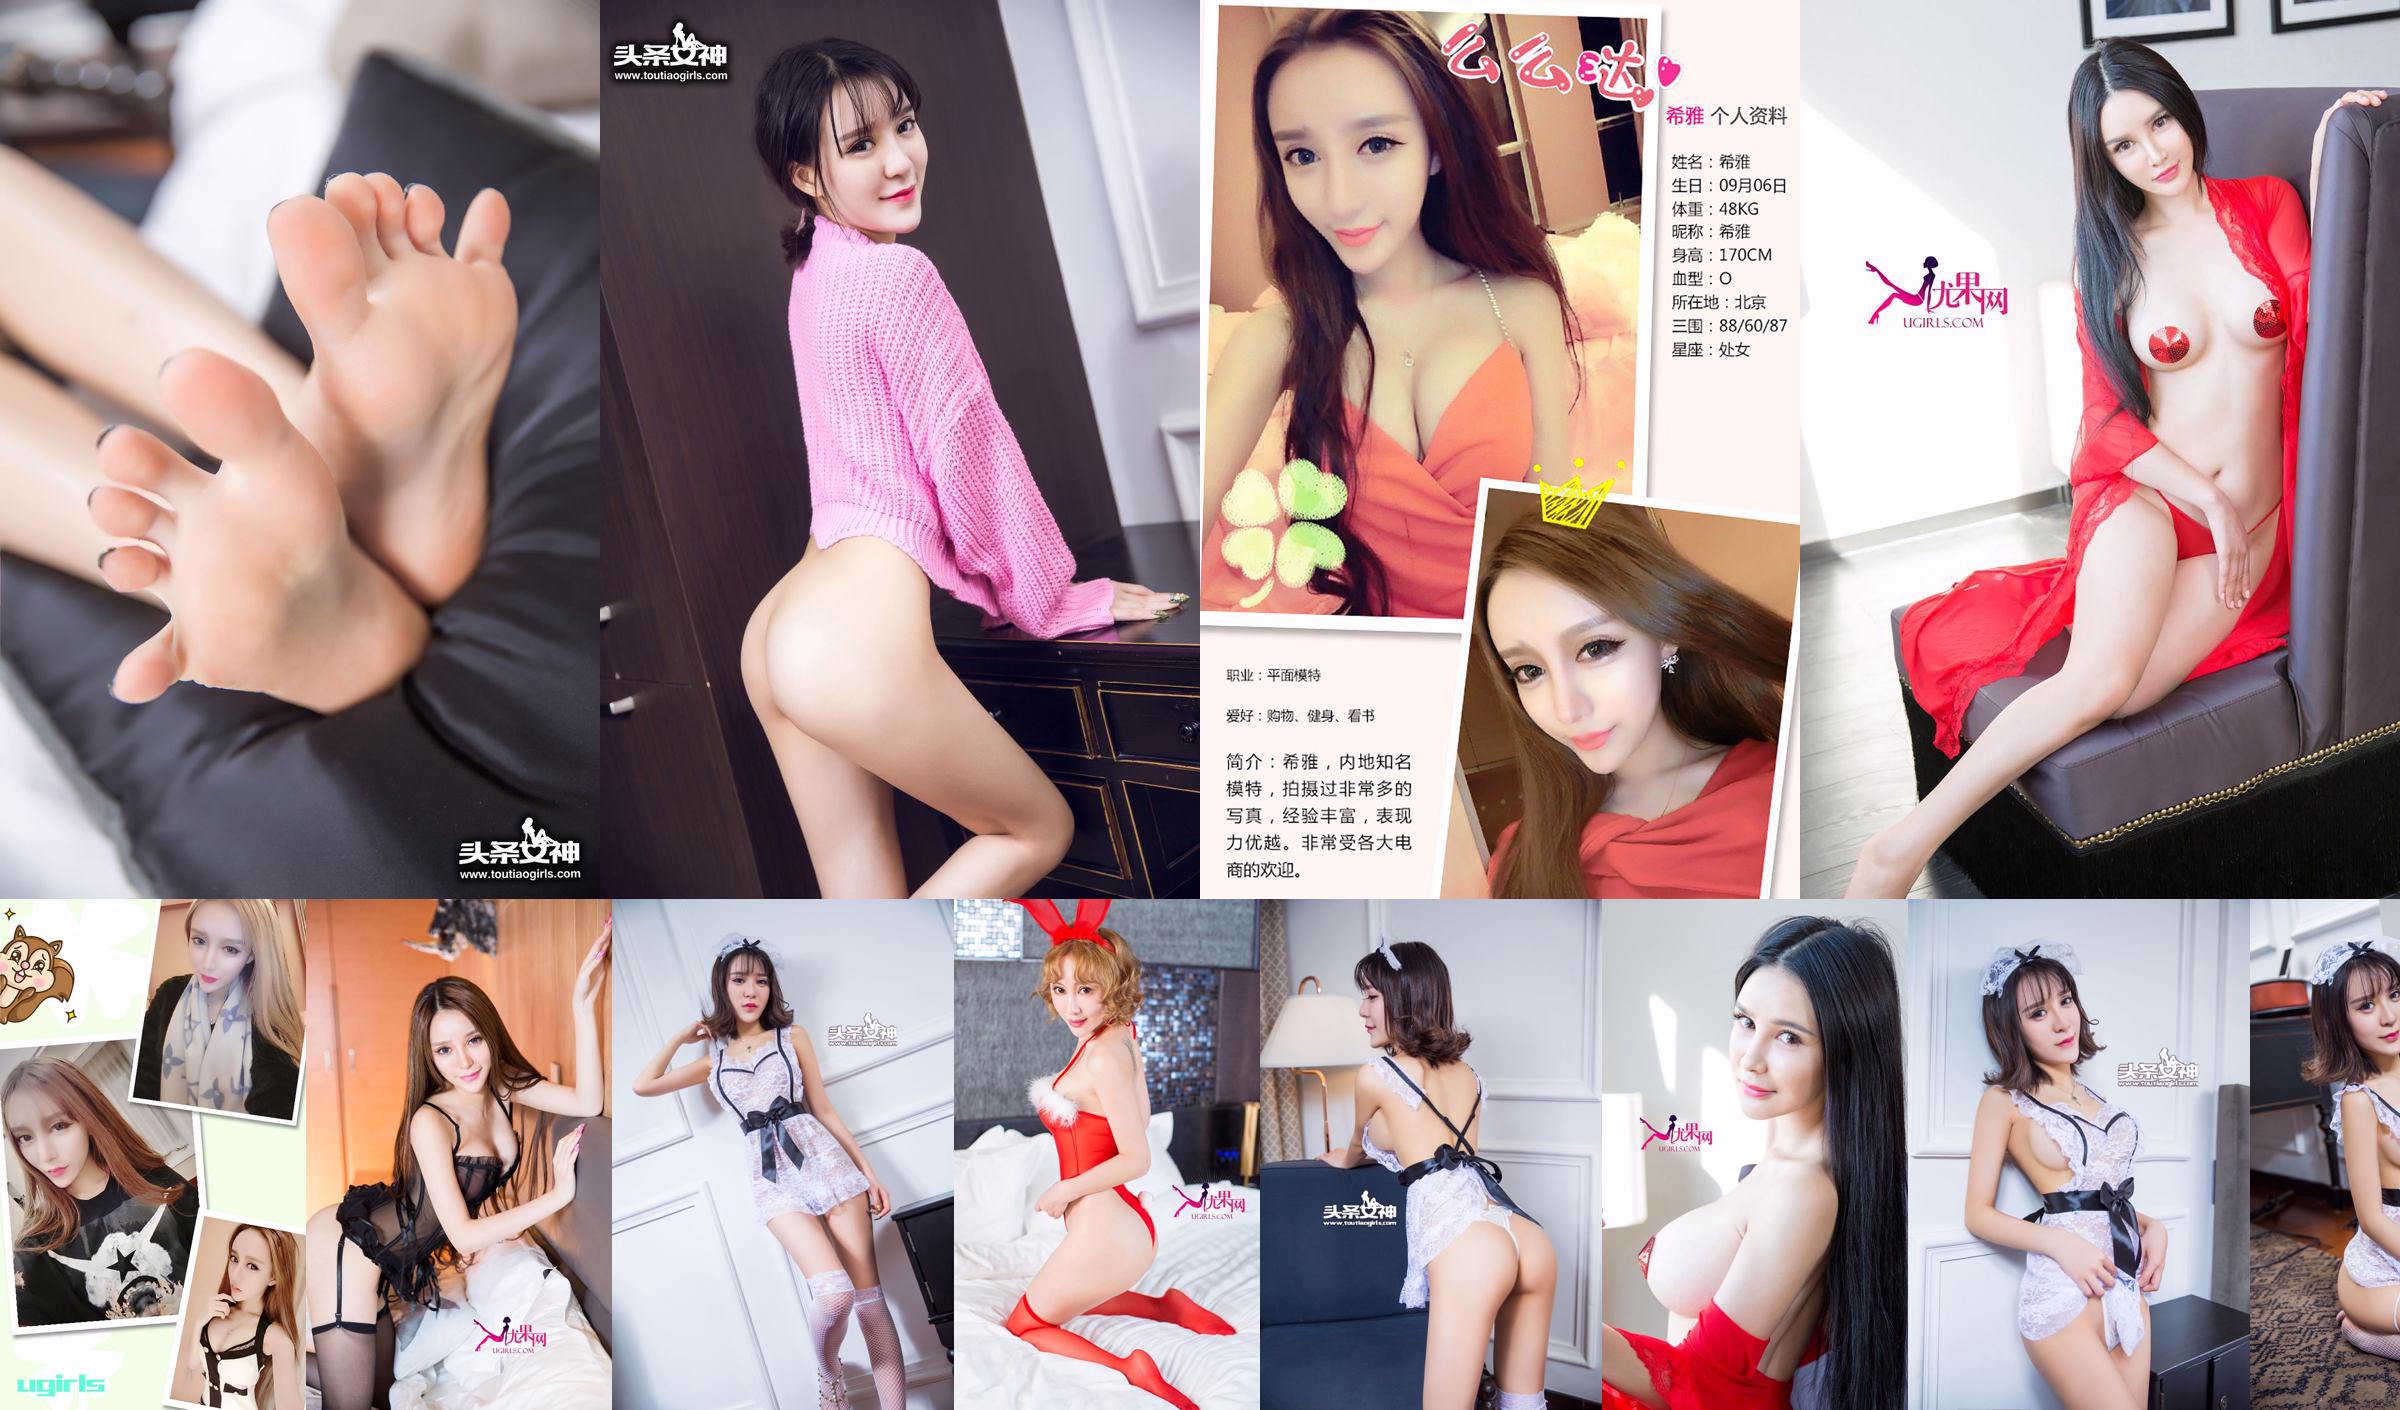 Xia "36D Lace Maid" [Bogini nagłówka] Wyłącznie dla VIP-ów No.af1054 Strona 1